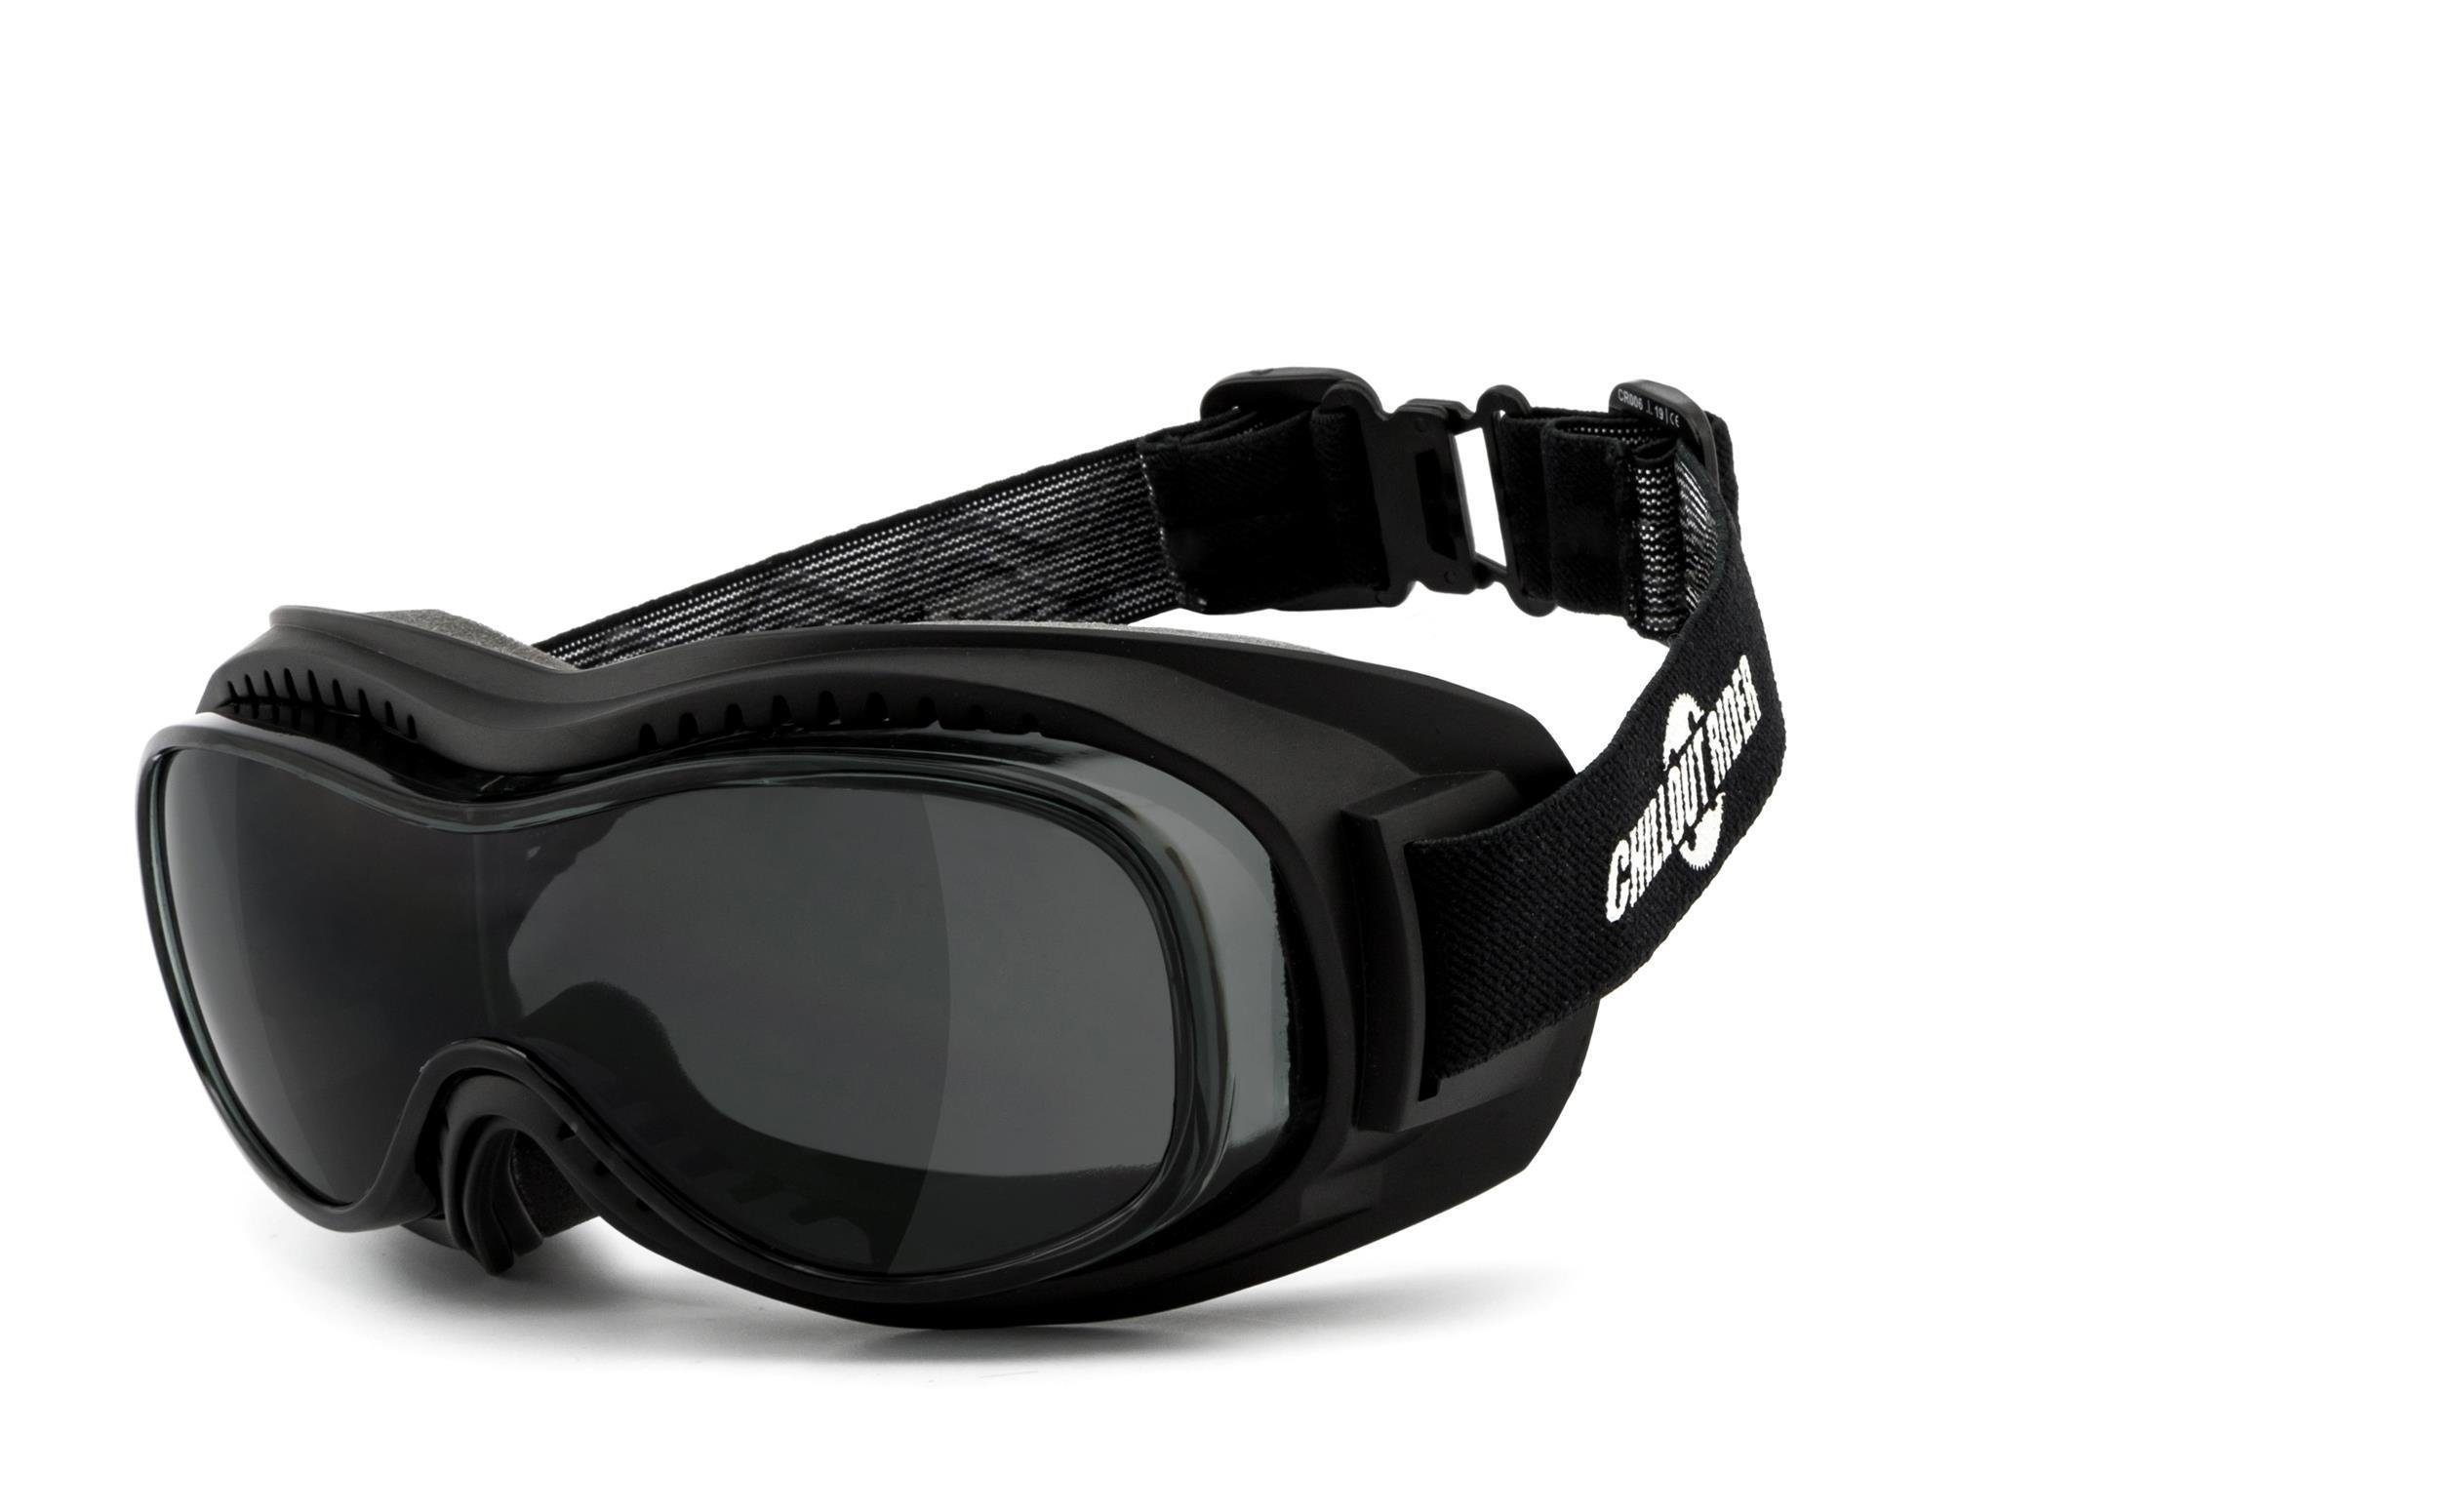 Chillout Rider Sonnenbrille CR006 ÜBERBRILLE, für Brillenträger geeignet